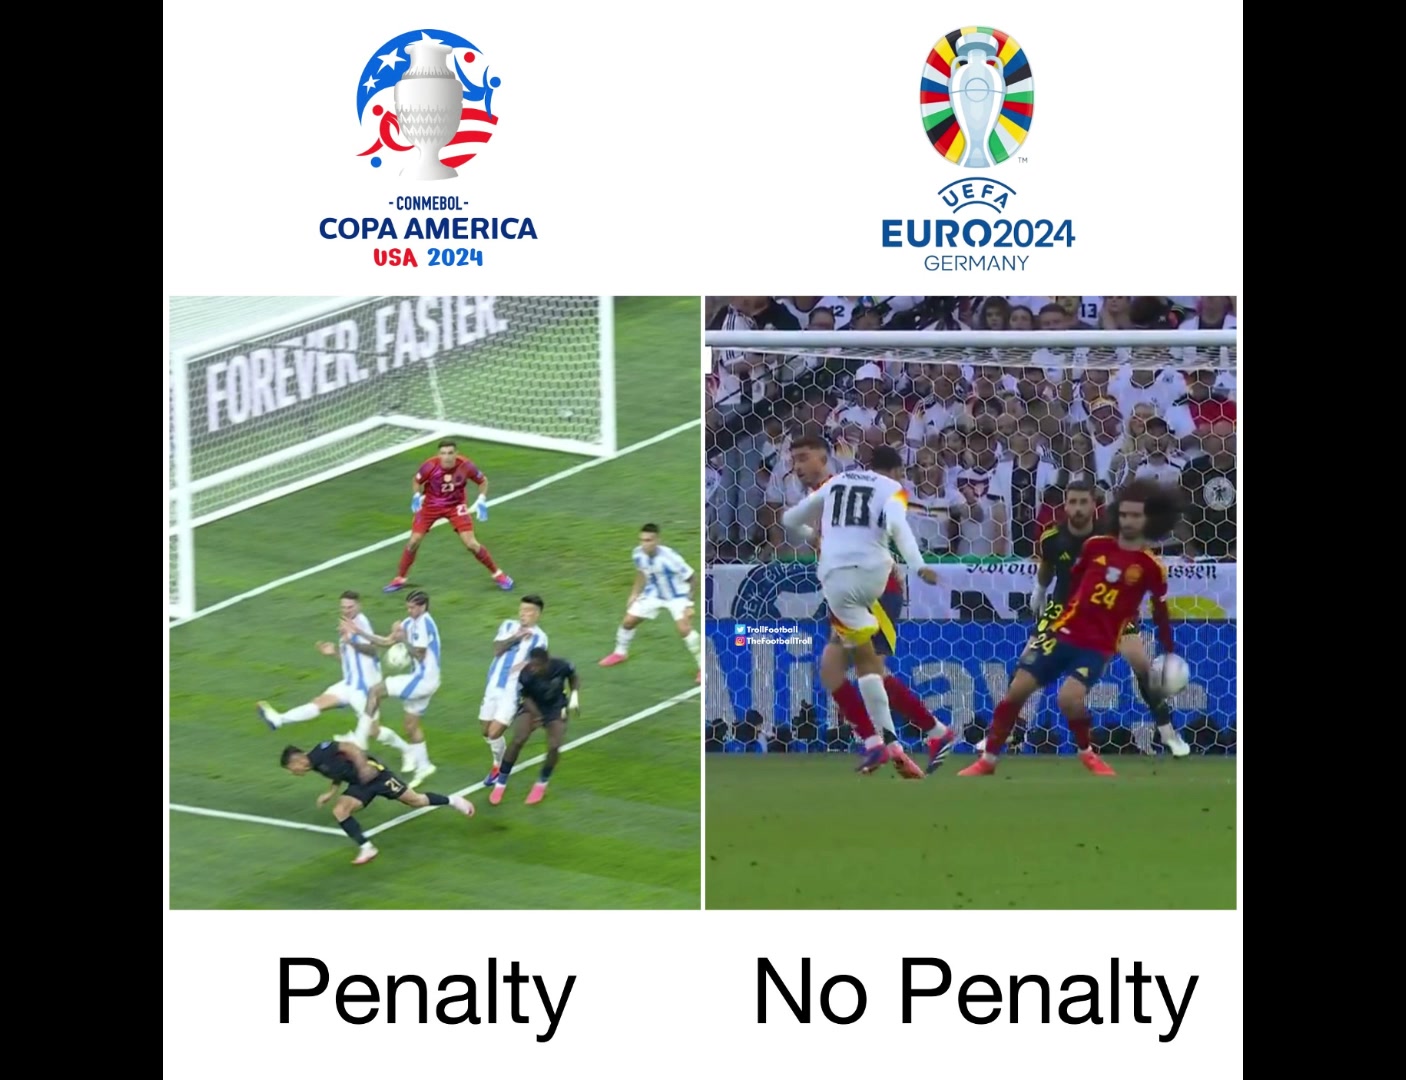  国外博主对比欧洲杯和美洲杯的判罚区别：德保罗手球（给点）和库库手球（不